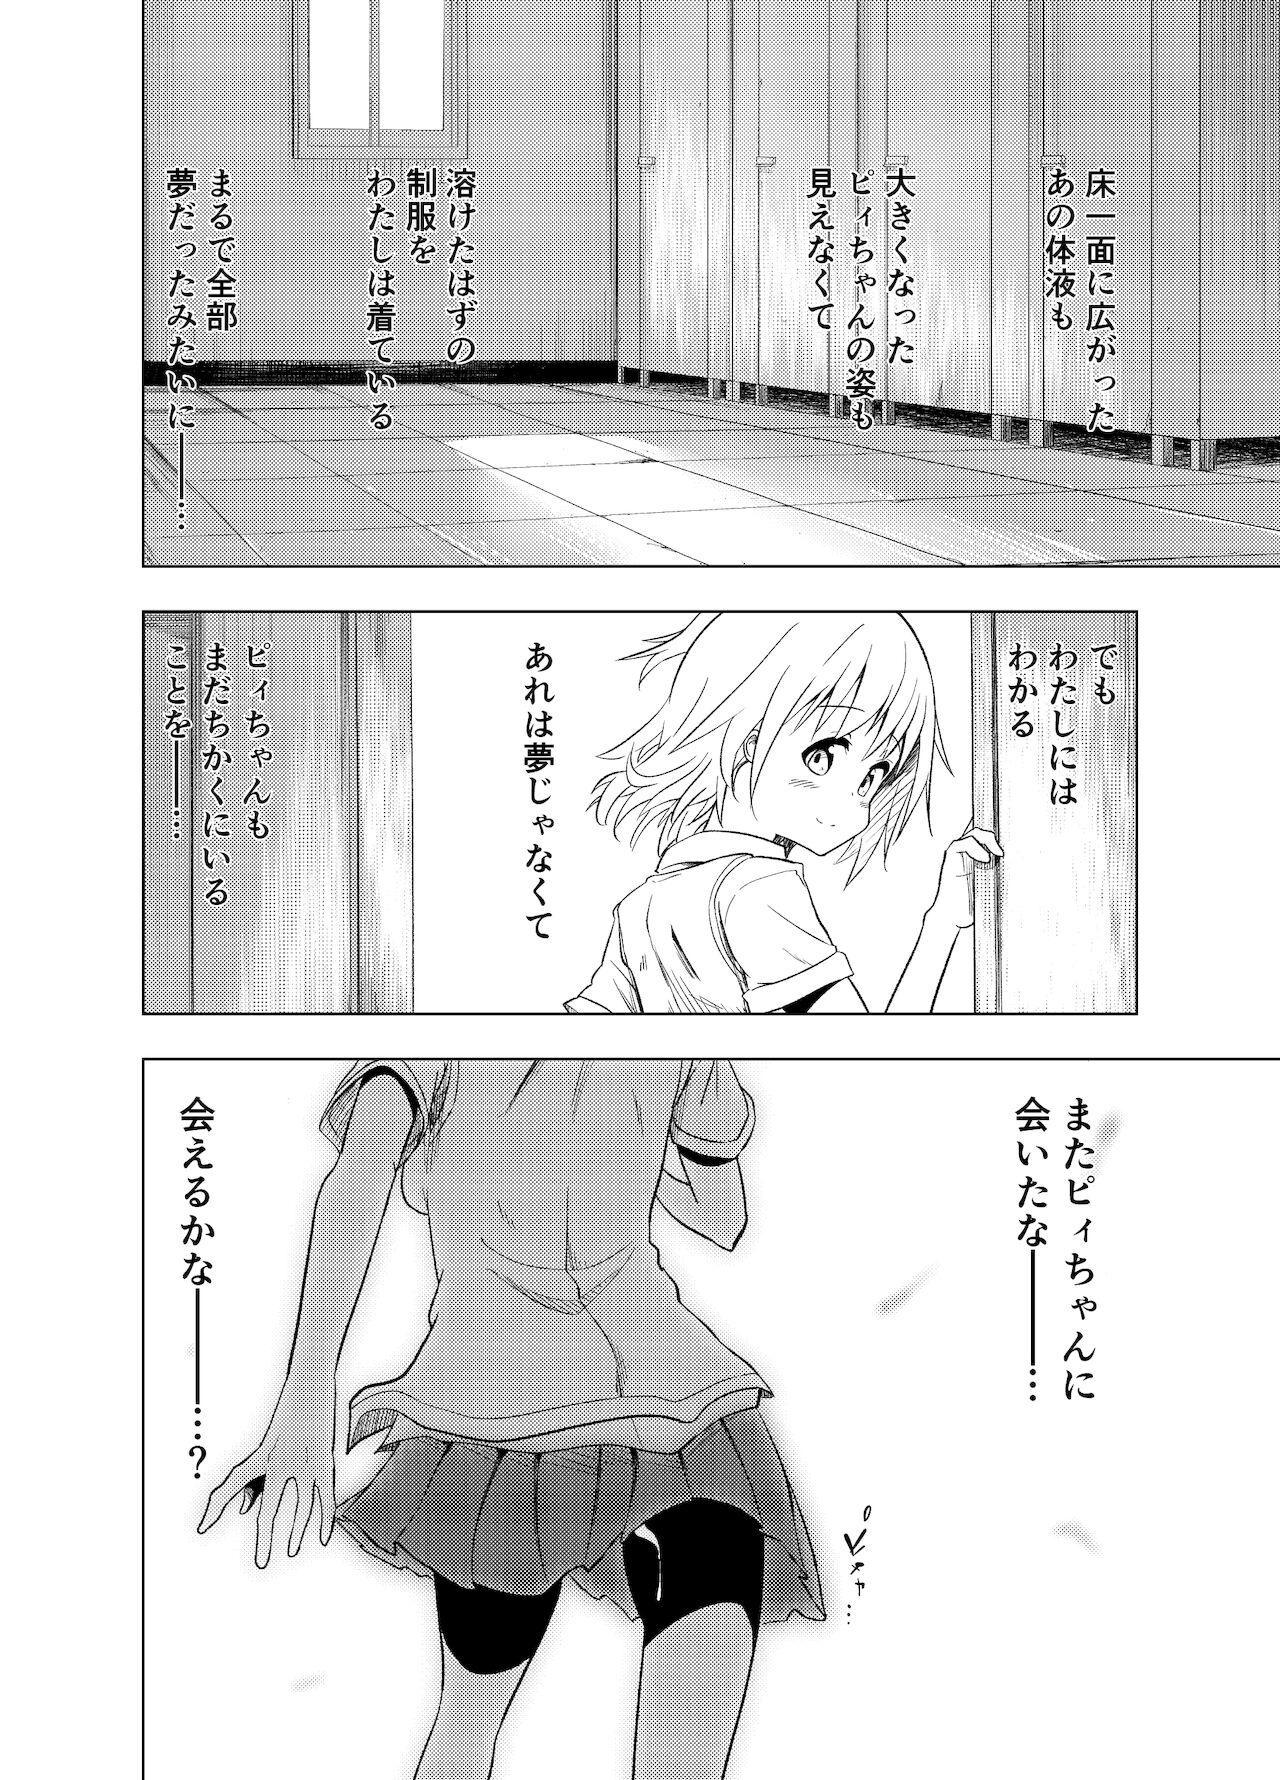 Sixtynine みらいいろ〜ハジメテのいろ〜 - Original Secretary - Page 57